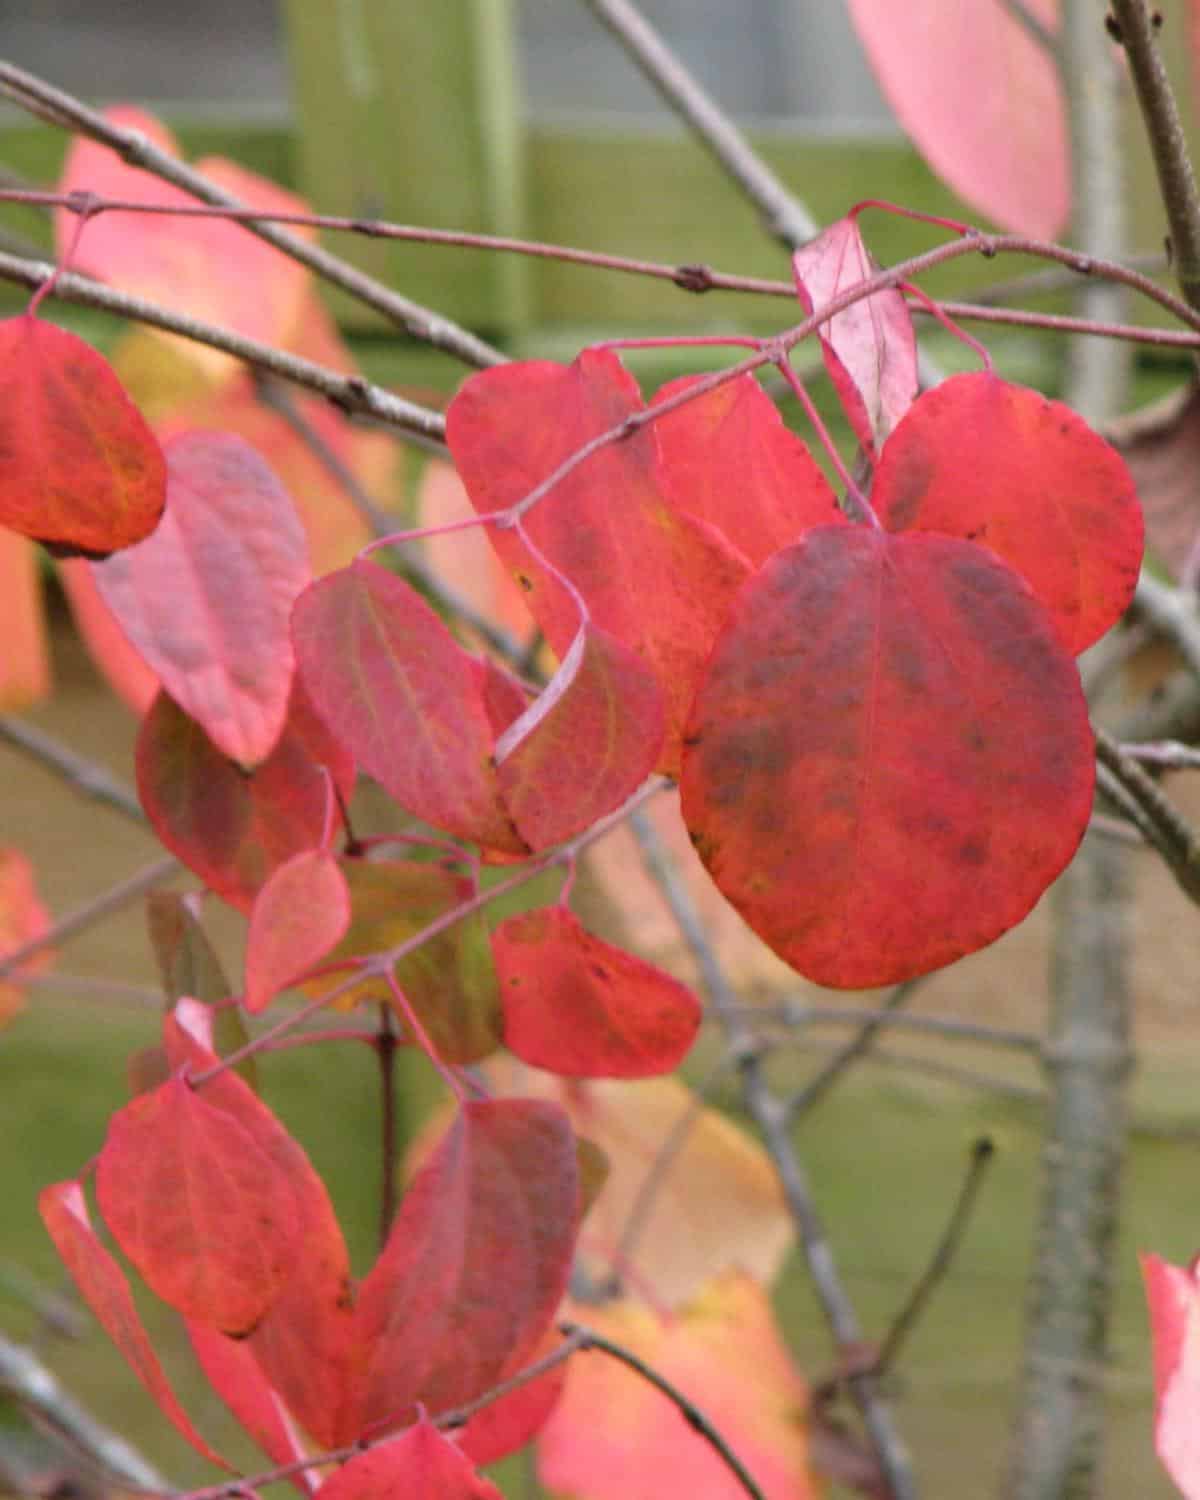 Katsura tree leaves in fall.